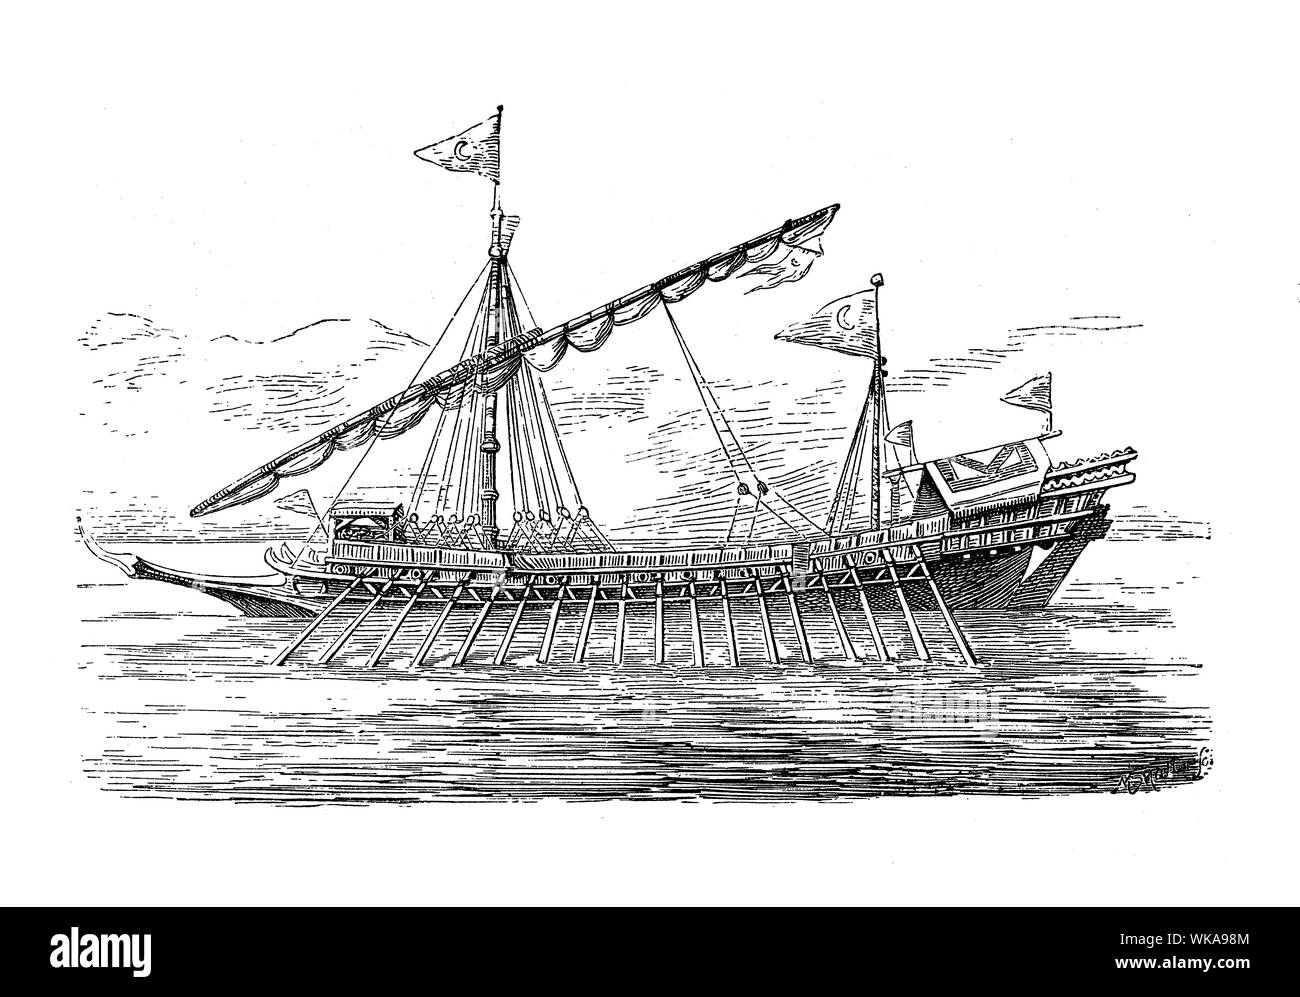 Cuisine turque avec bateau coque longue et mince et faible tirant propulsés par l'aviron, 16e siècle Banque D'Images